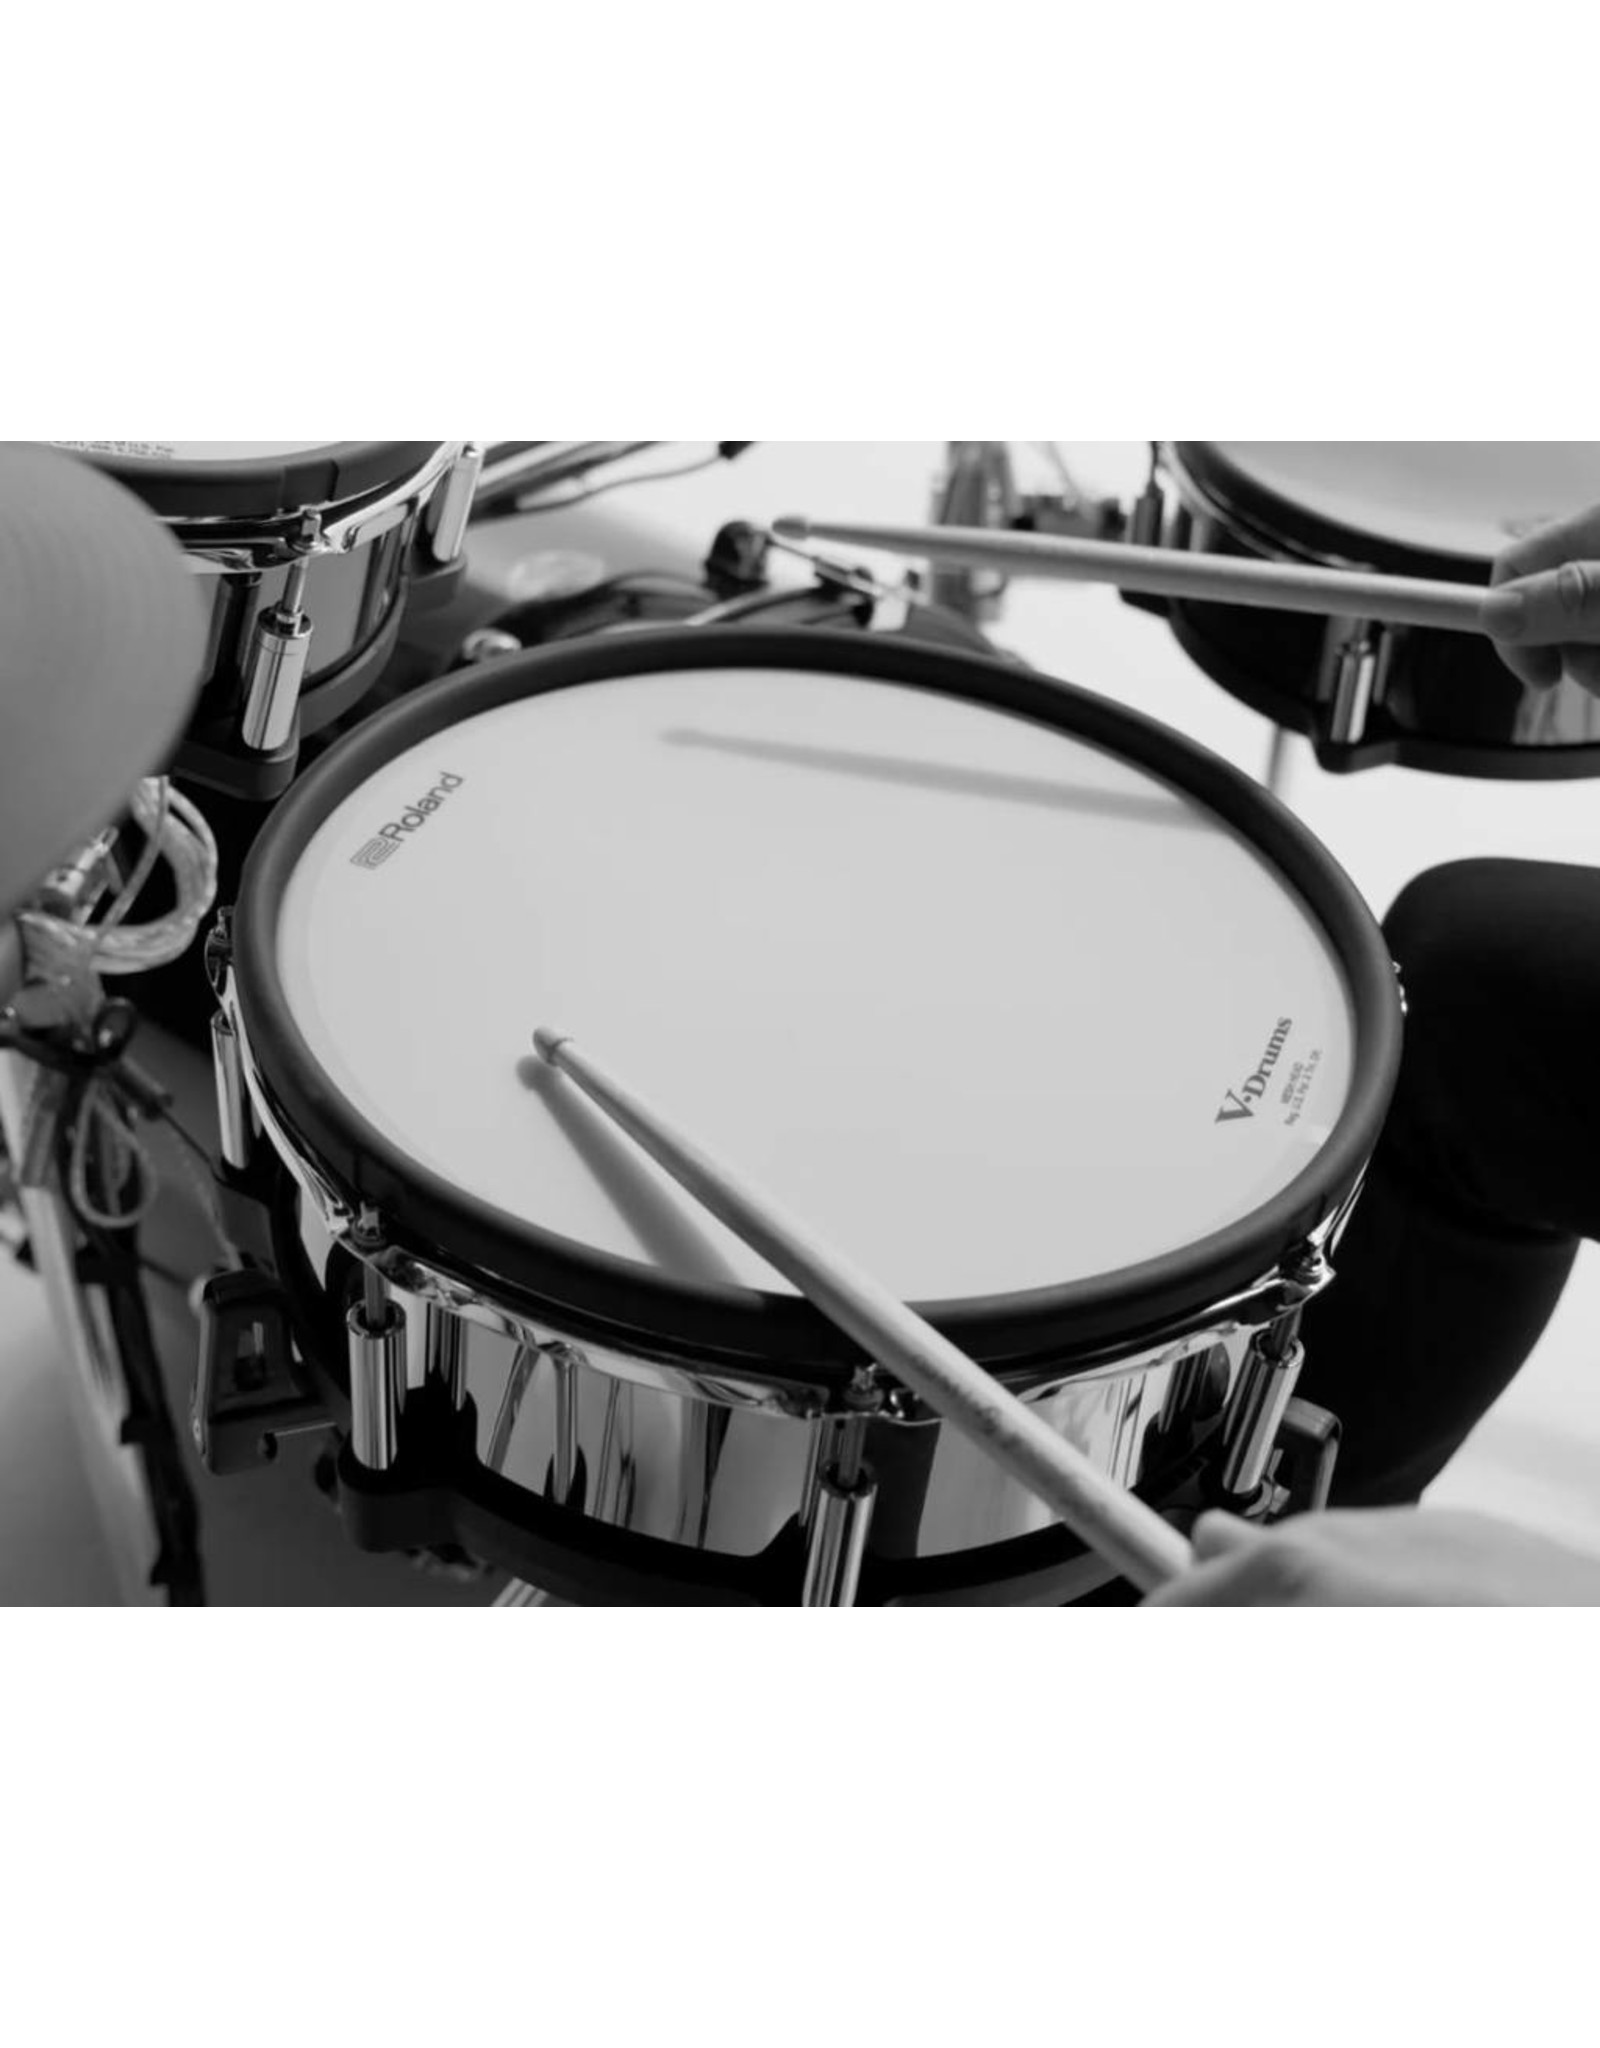 Roland TD-50-KV V-Drums Kit winkel model